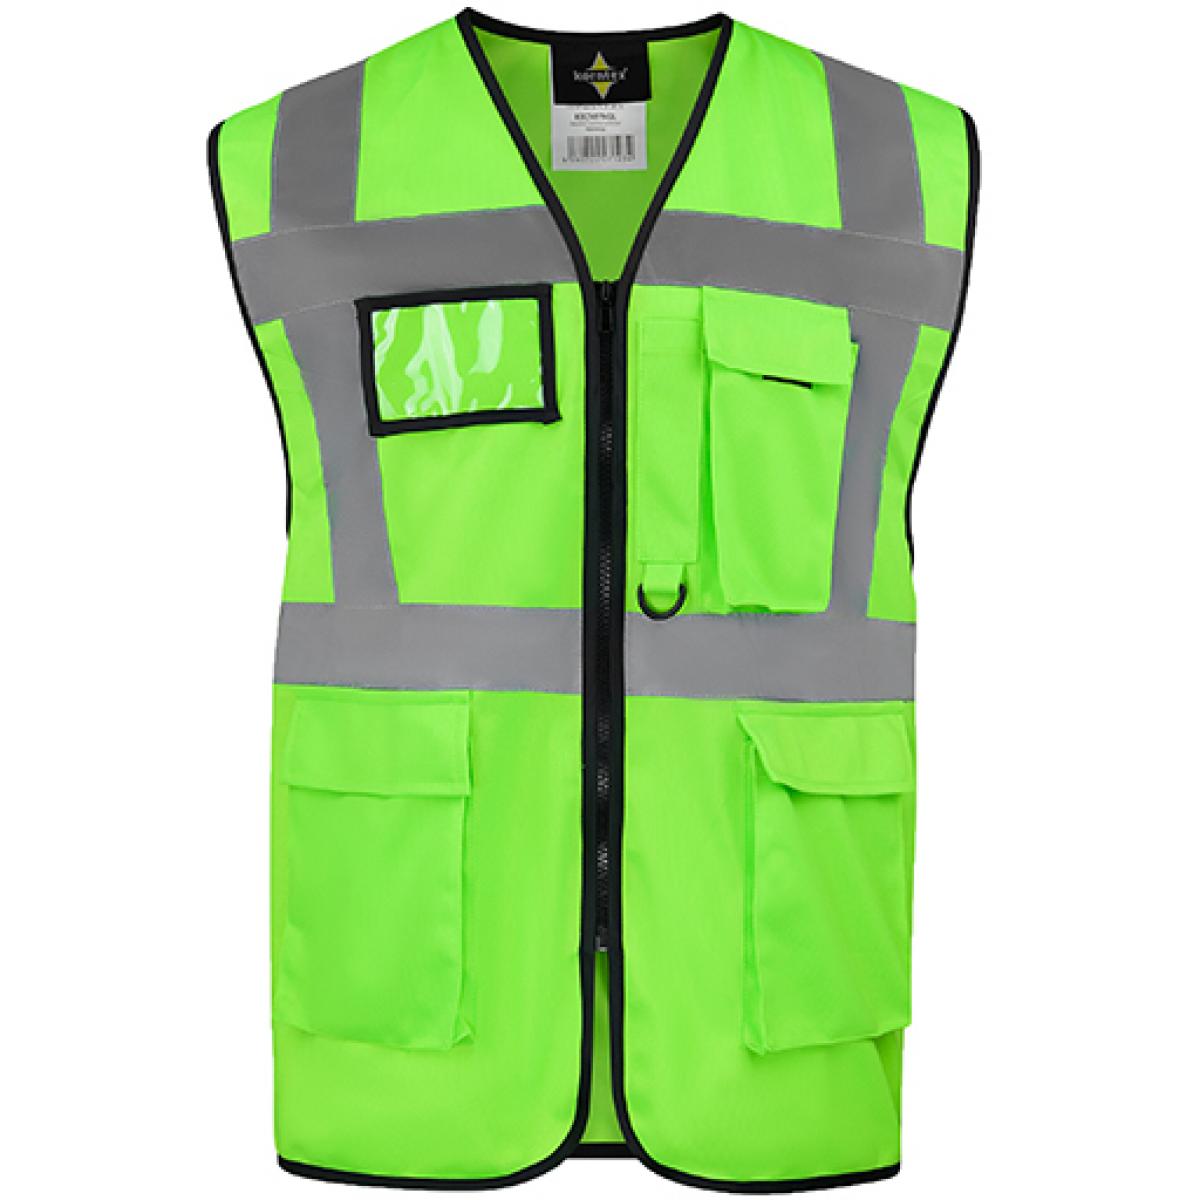 Hersteller: Korntex Herstellernummer: KXCMF Artikelbezeichnung: Comfort Executive Multifunctional Safety Vest Hamburg Farbe: Neon Green